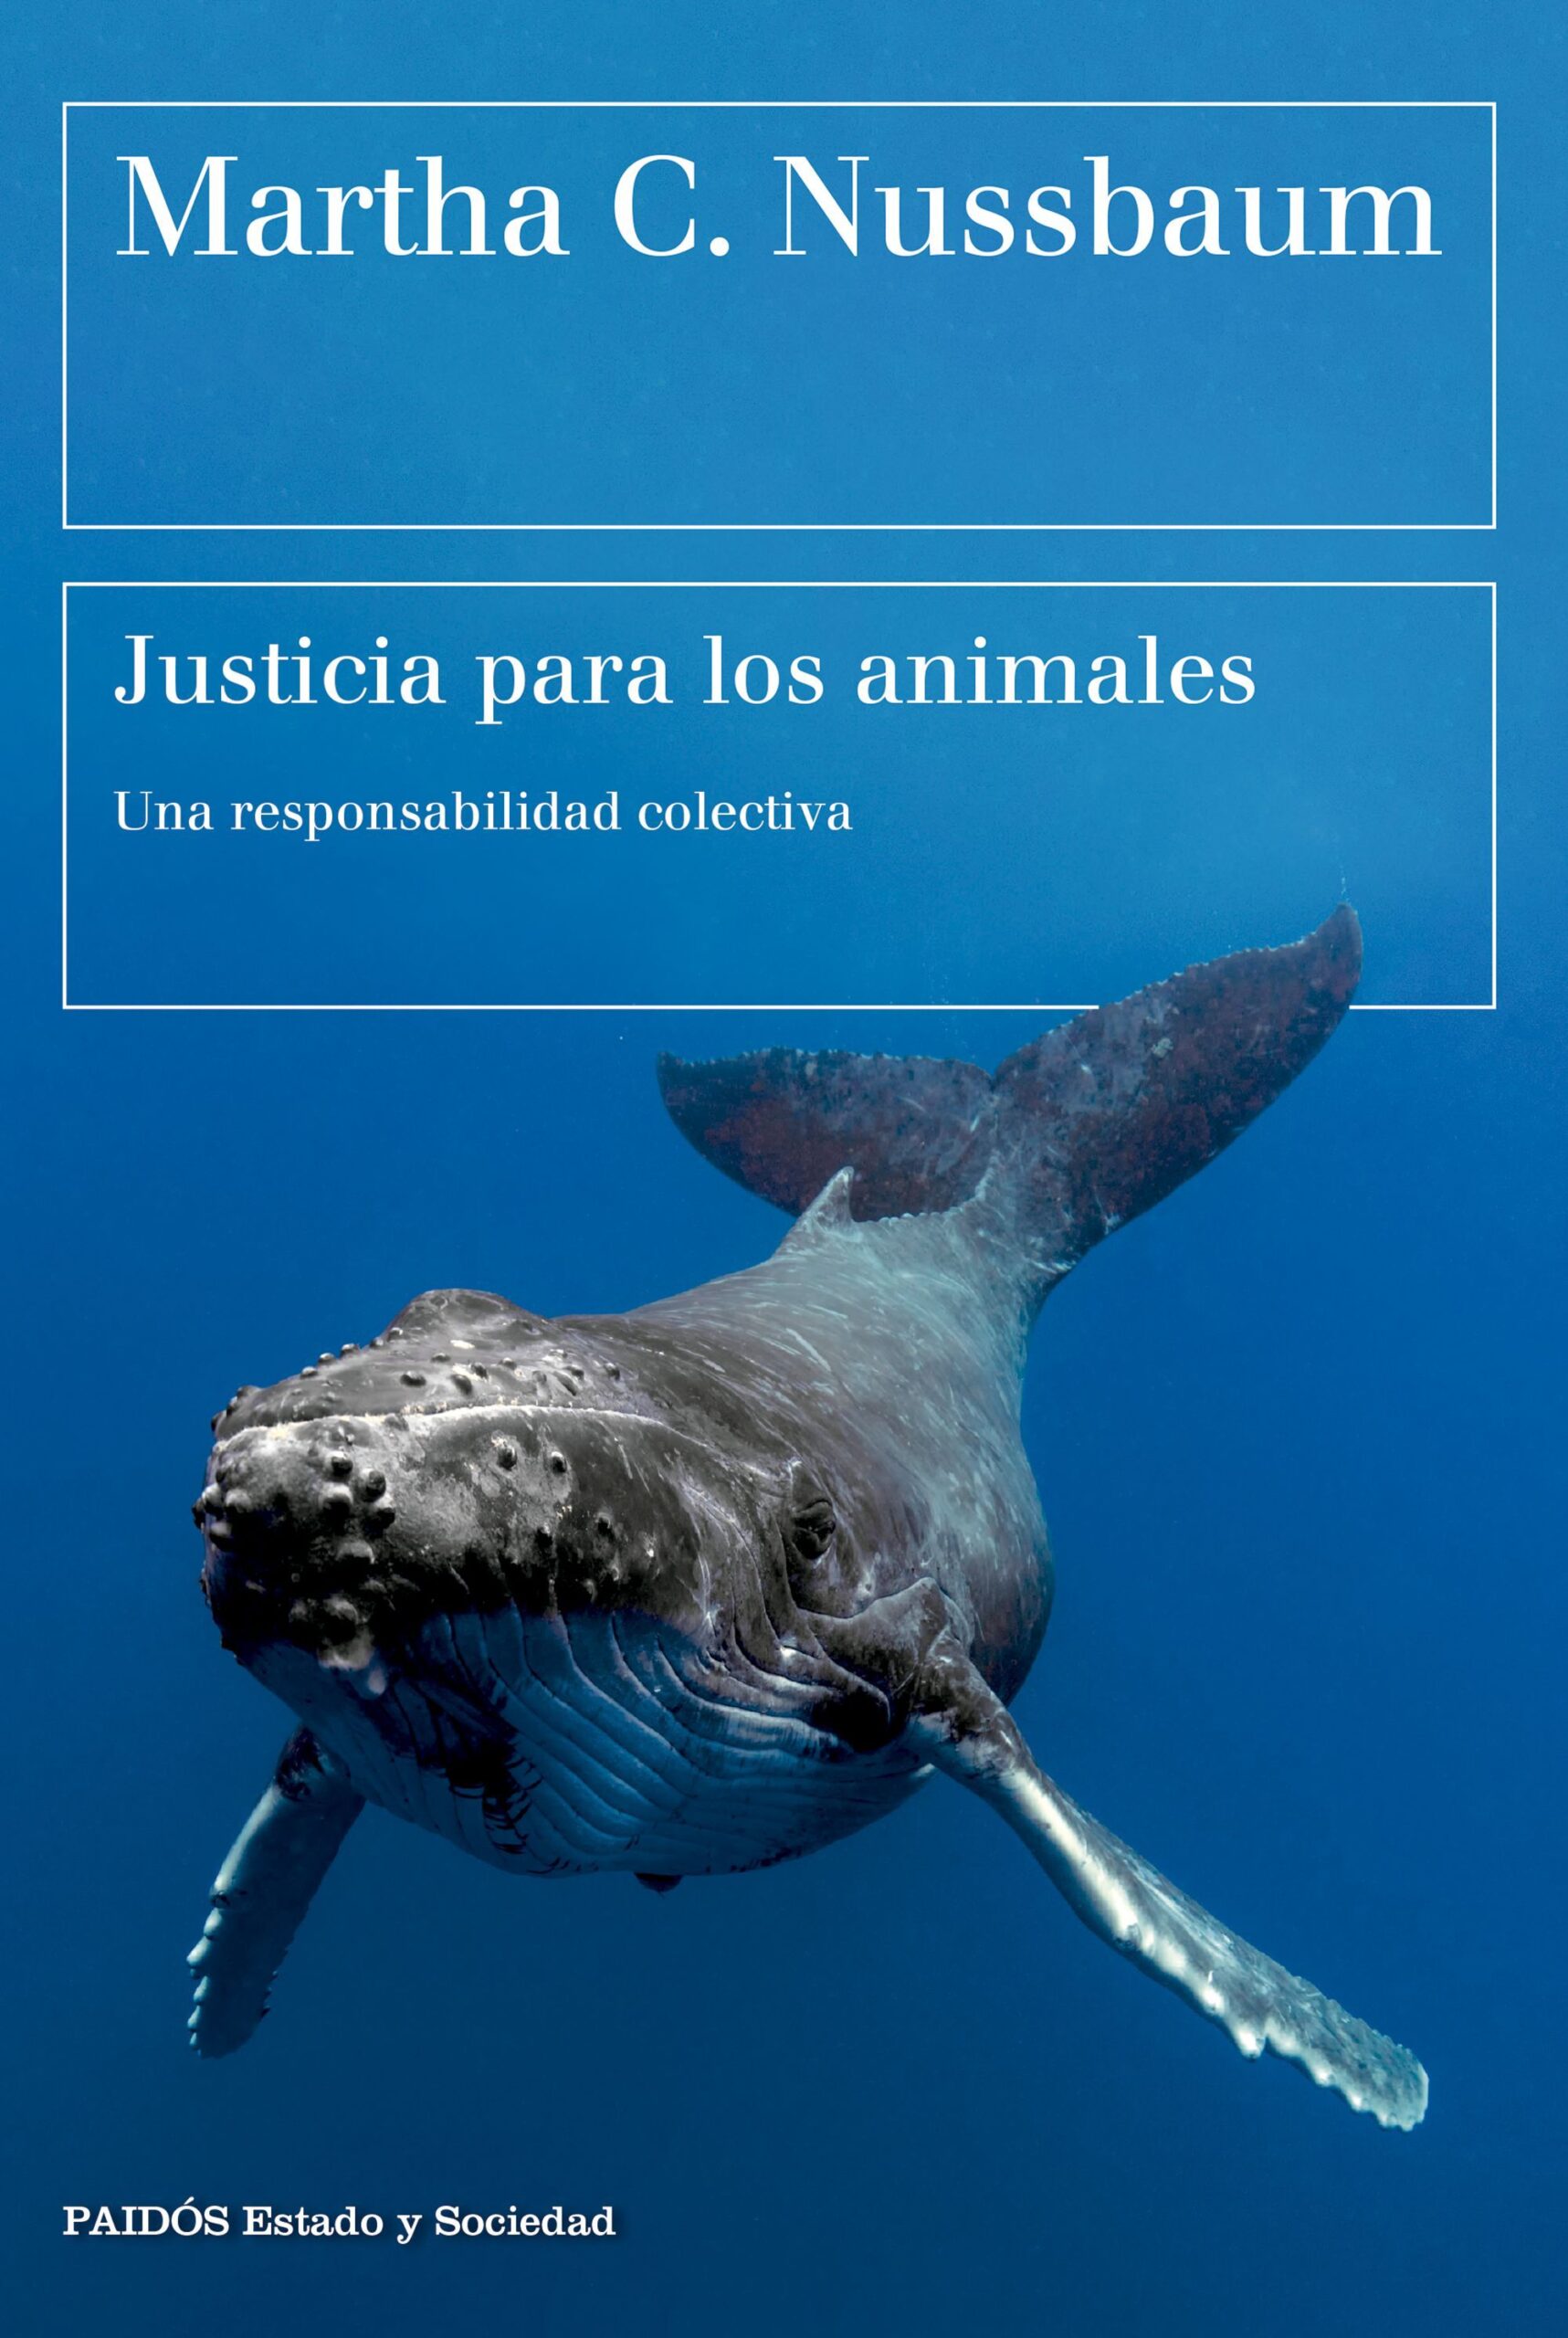 JUSTICIA-PARA-LOS-ANIMALES.jpg